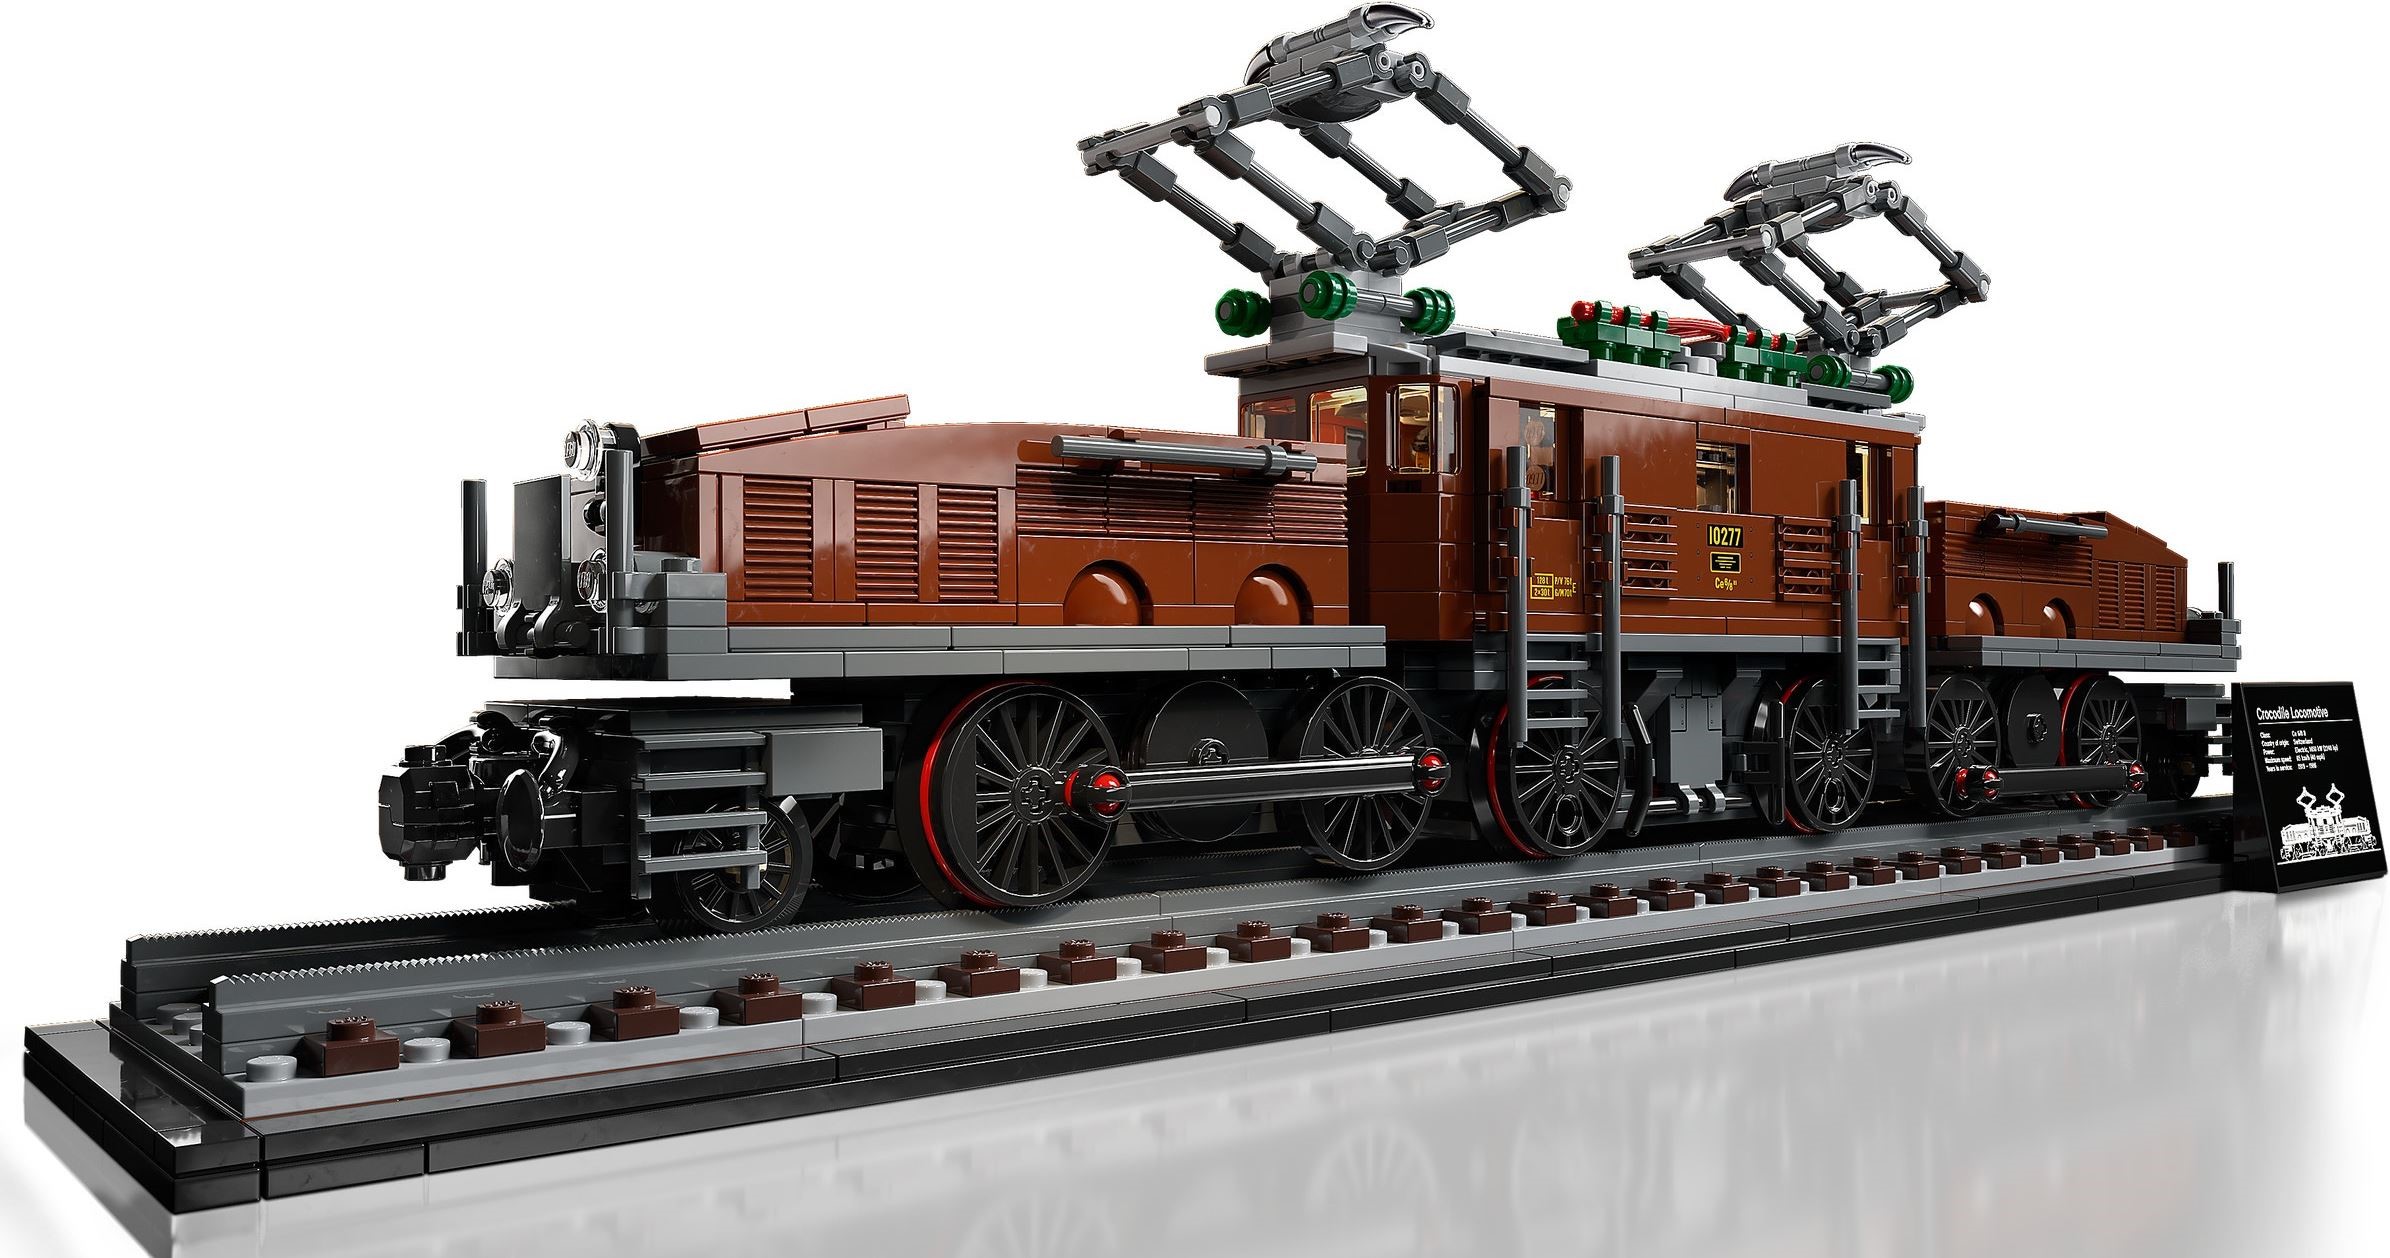 10277 LEGO Creator Expert Trains Crocodile Locomotive - Chuyến Tàu lửa/ tàu hỏa đầu máy hình cá sấu cổ điển